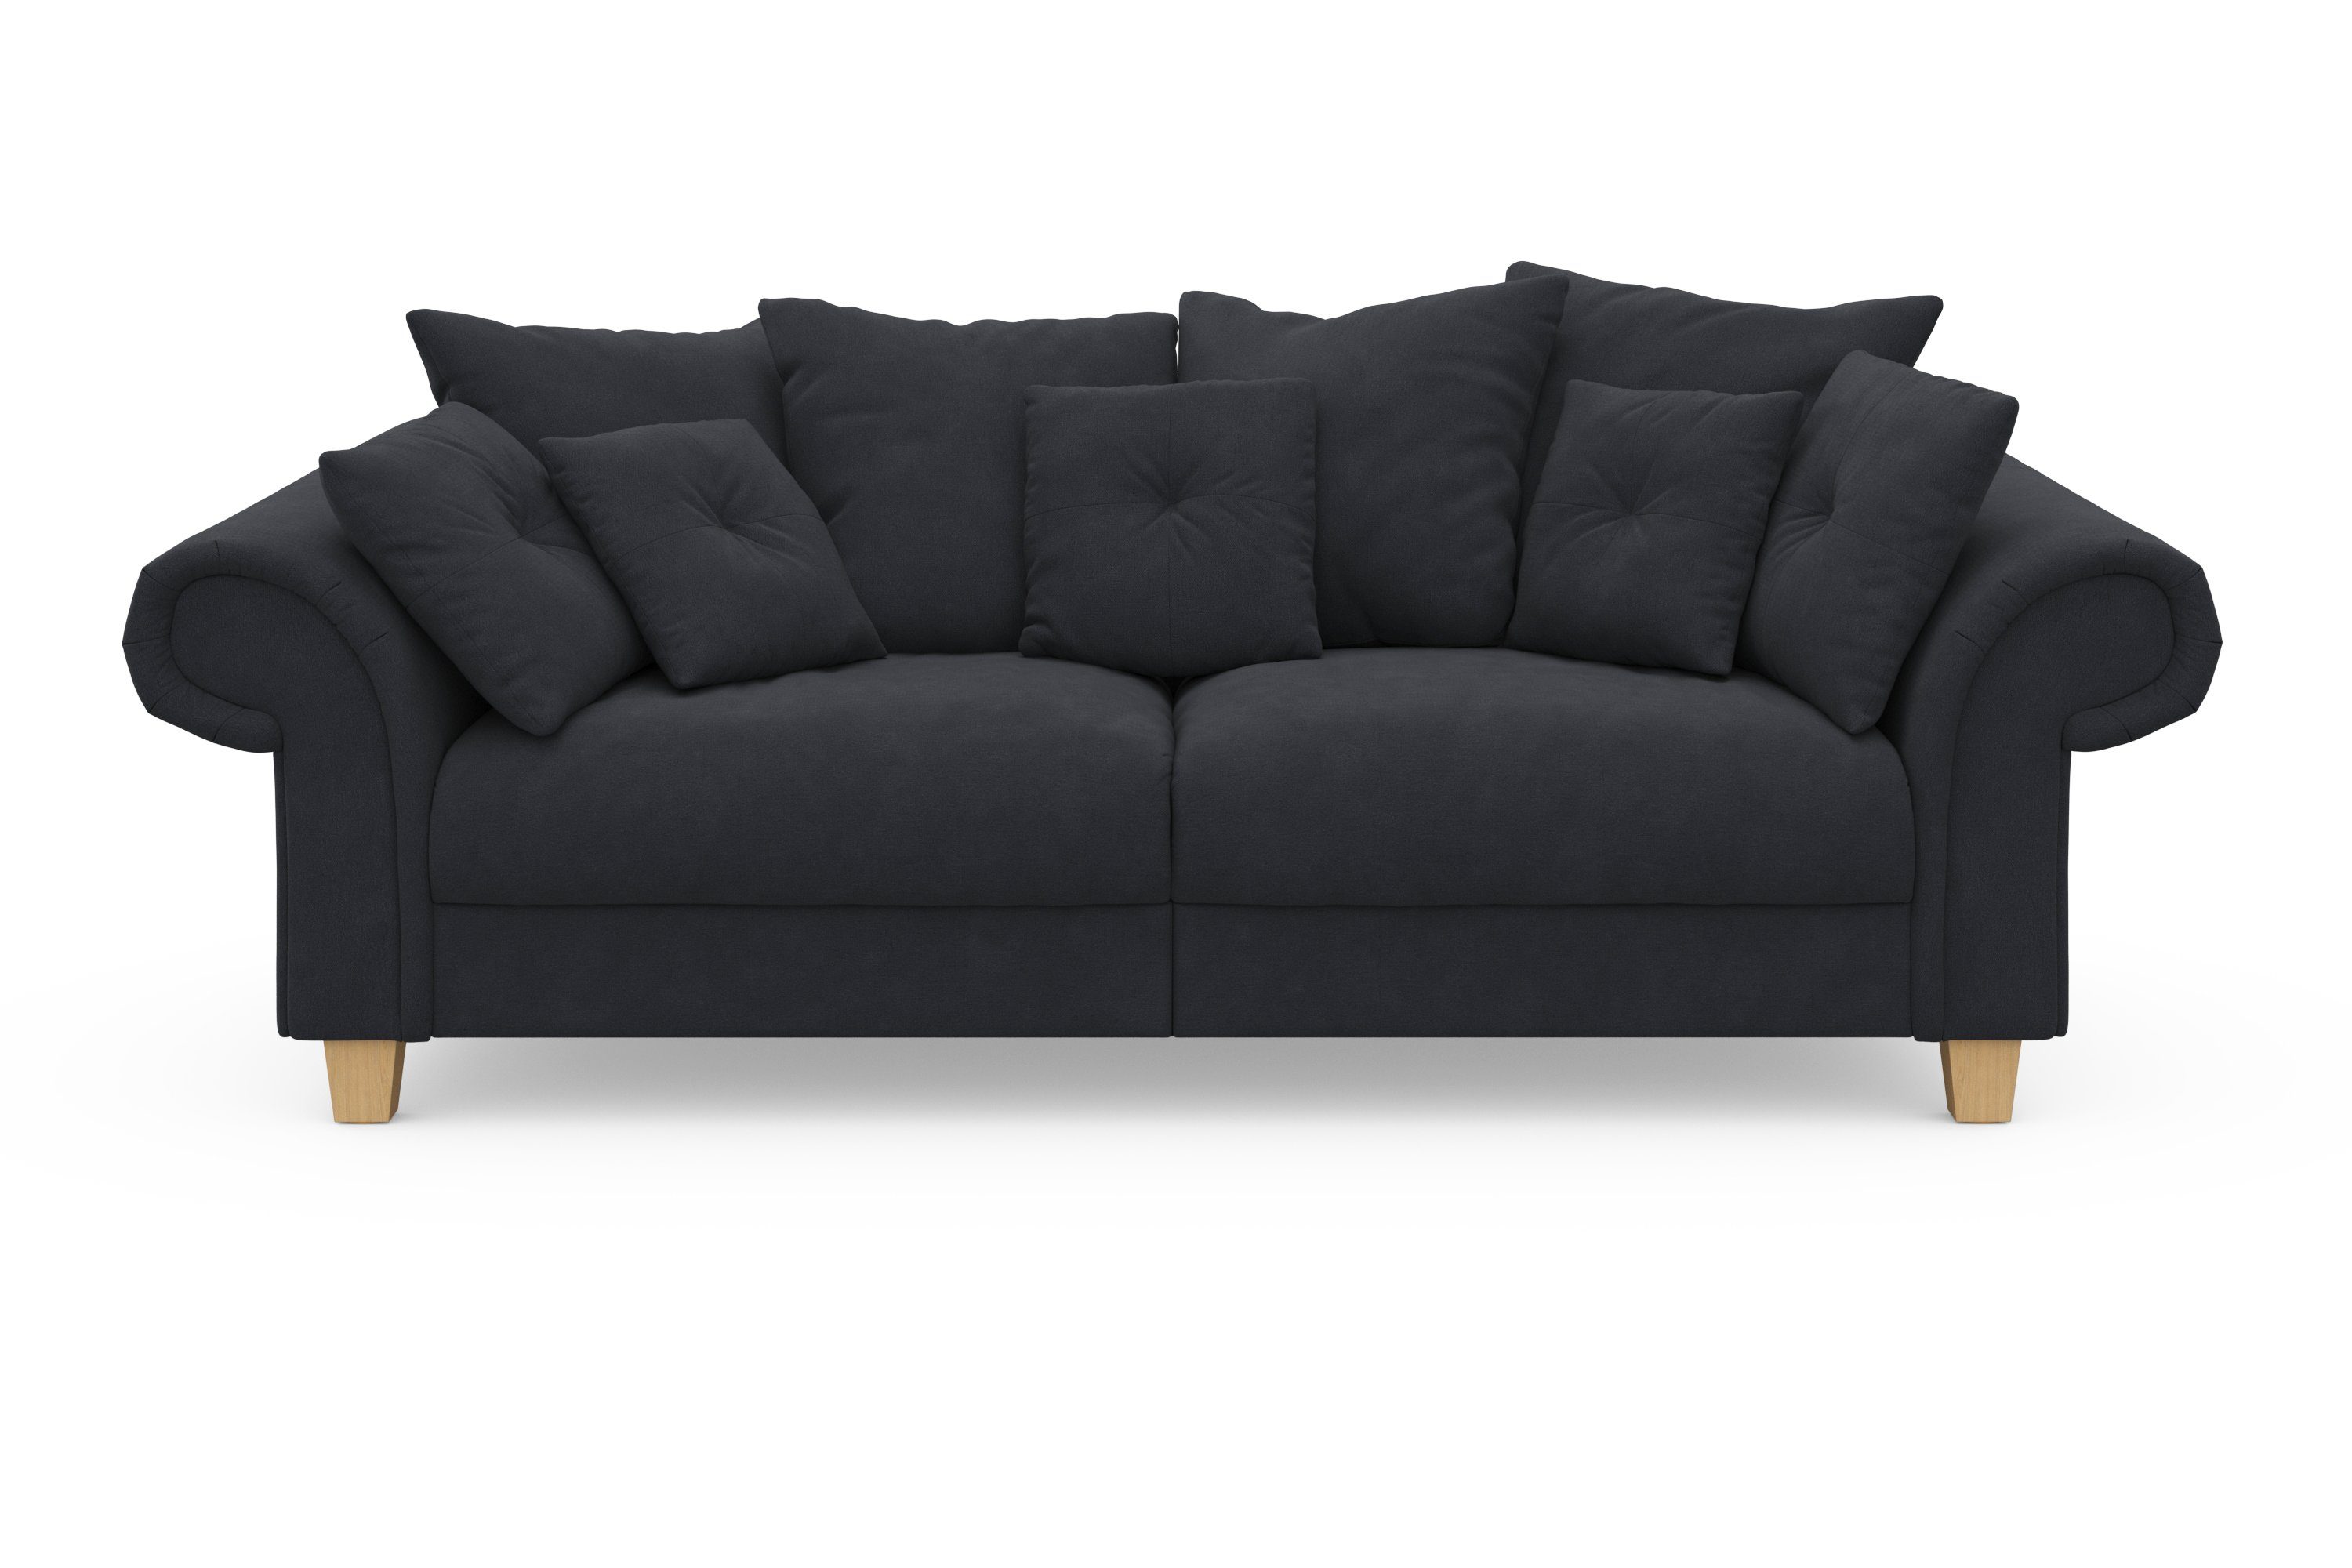 Home affaire Big-Sofa Queenie Megasofa, 2 Teile, mit weichem Sitzkomfort  und zeitlosem Design, viele kuschelige Kissen, Mit vielen kuscheligen Kissen